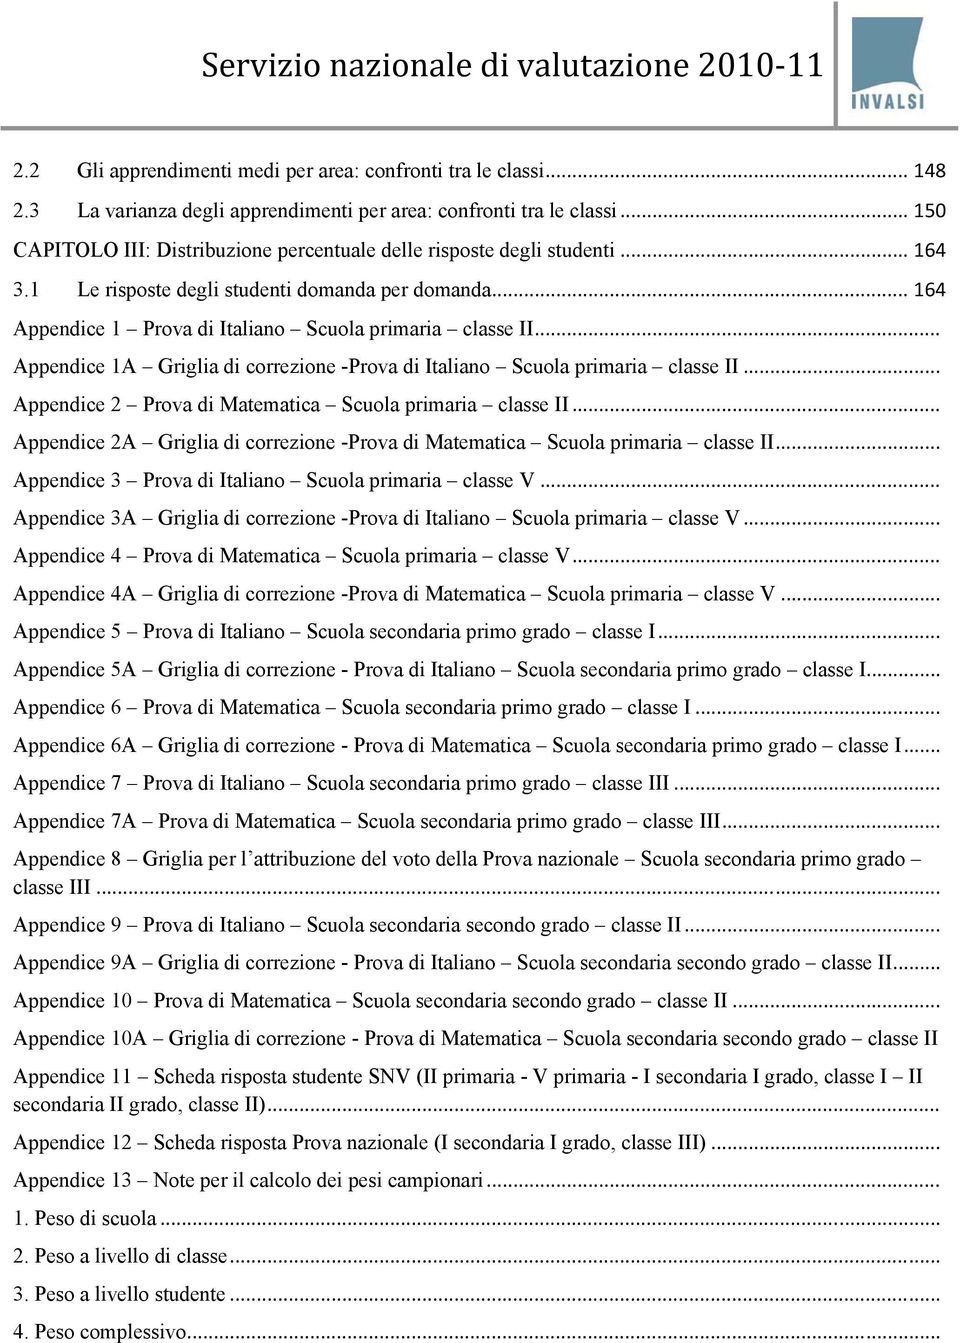 .. Appendice 1A Griglia di correzione -Prova di Italiano Scuola primaria classe II... Appendice 2 Prova di Matematica Scuola primaria classe II.